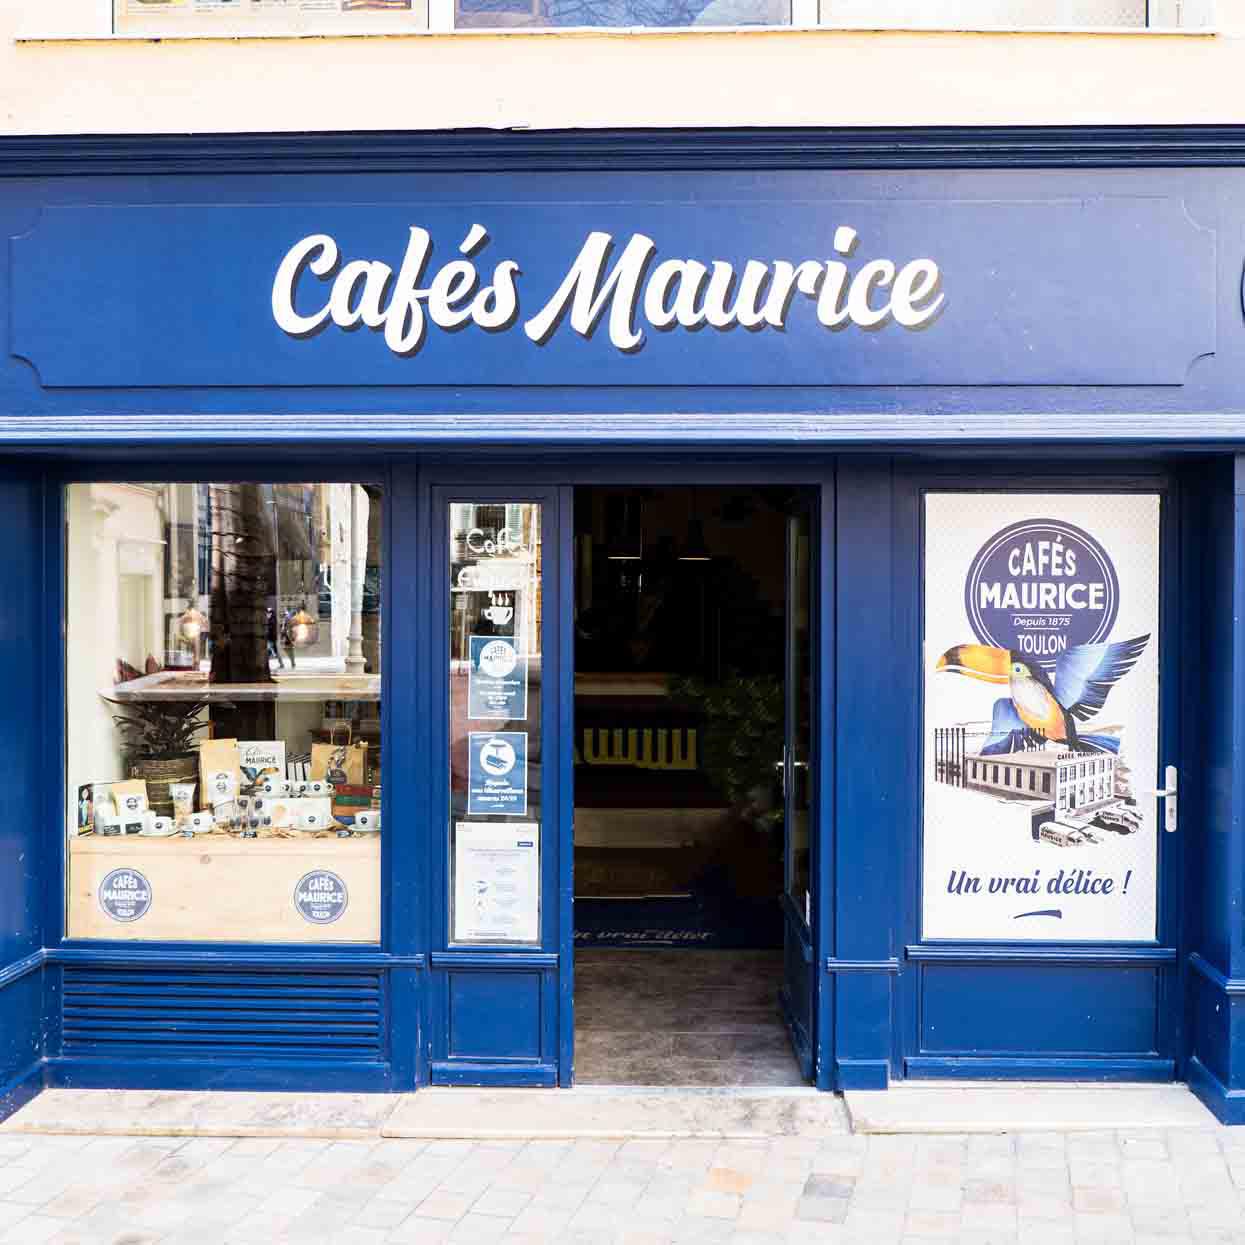 Cafés Maurice